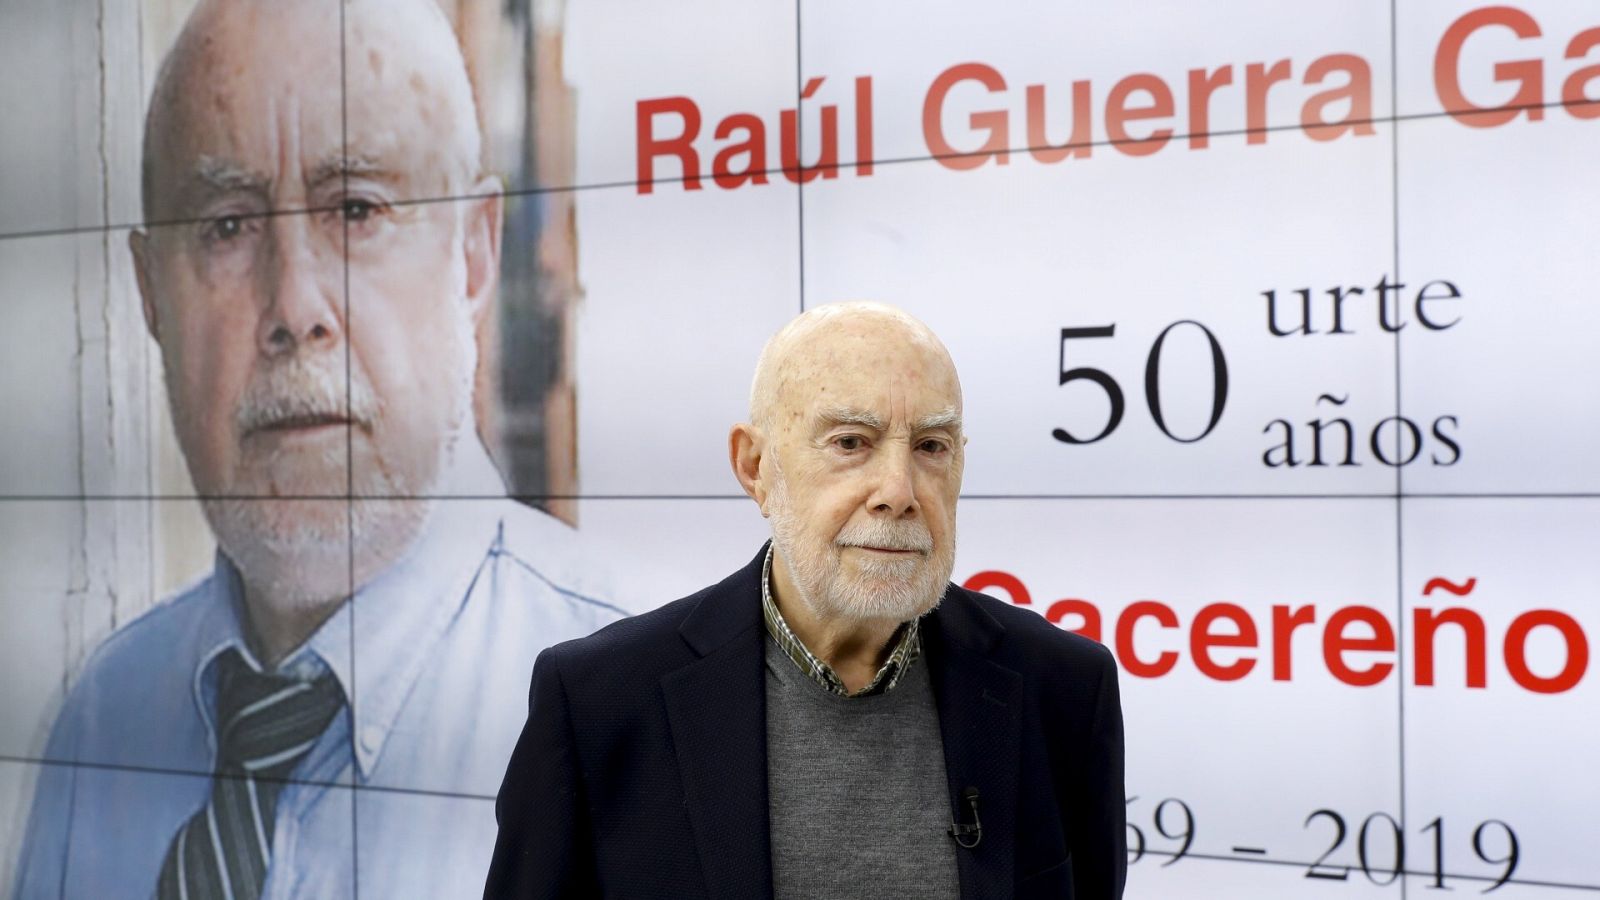 El escritor Raúl Guerra Garrido